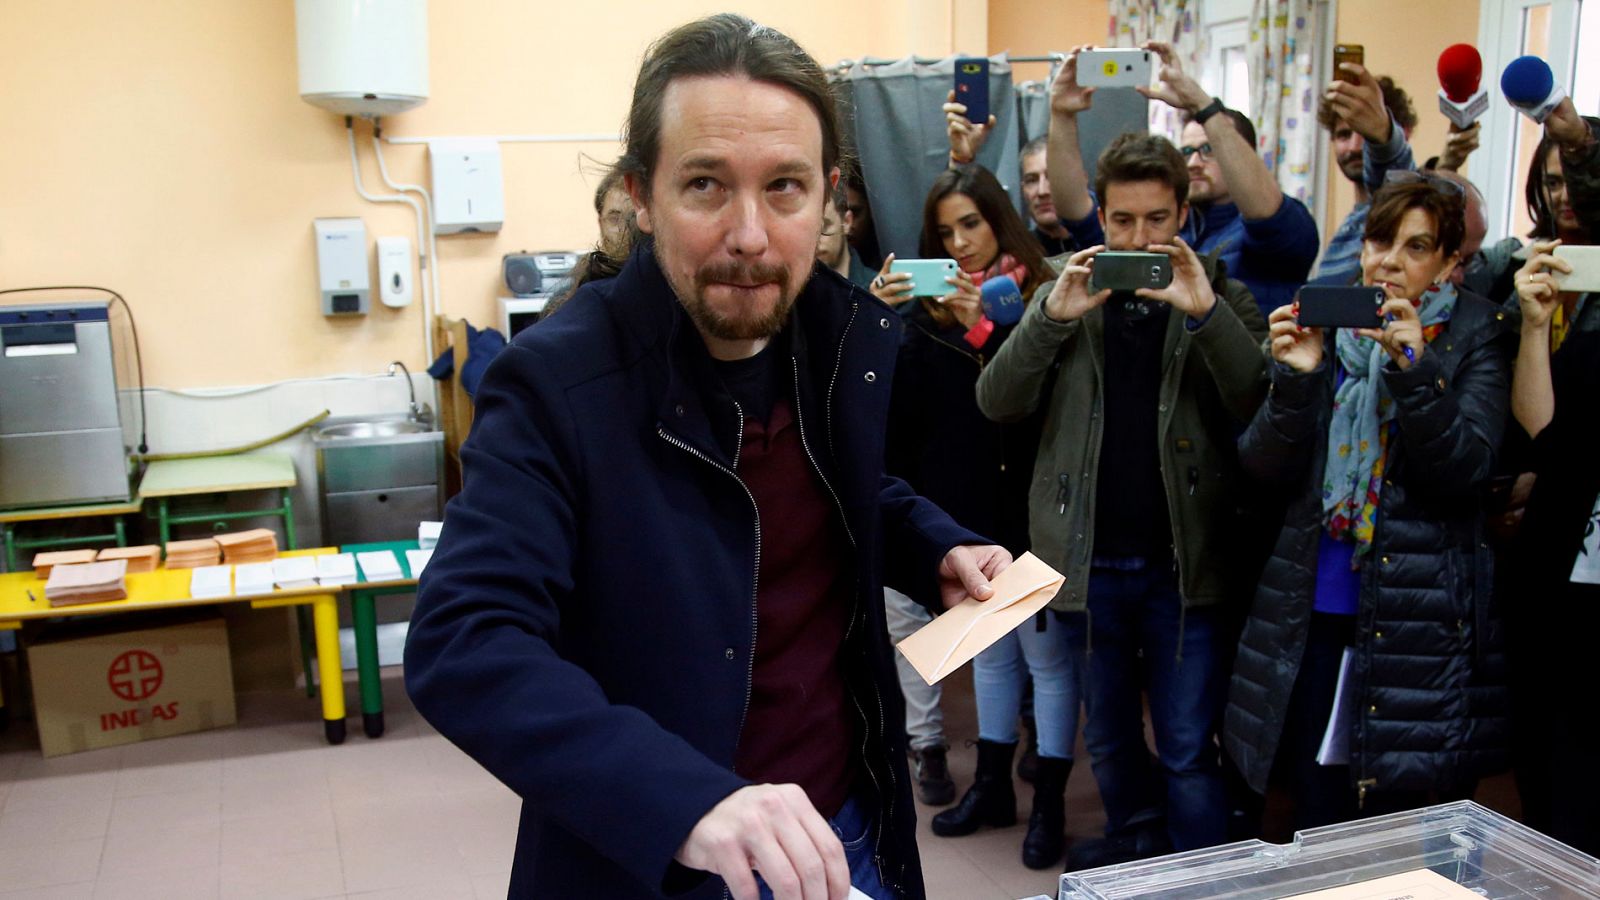 Elecciones Generales 2019 del 10N: Pablo Iglesias vota en un colegio de Galapagar - RTVE.es